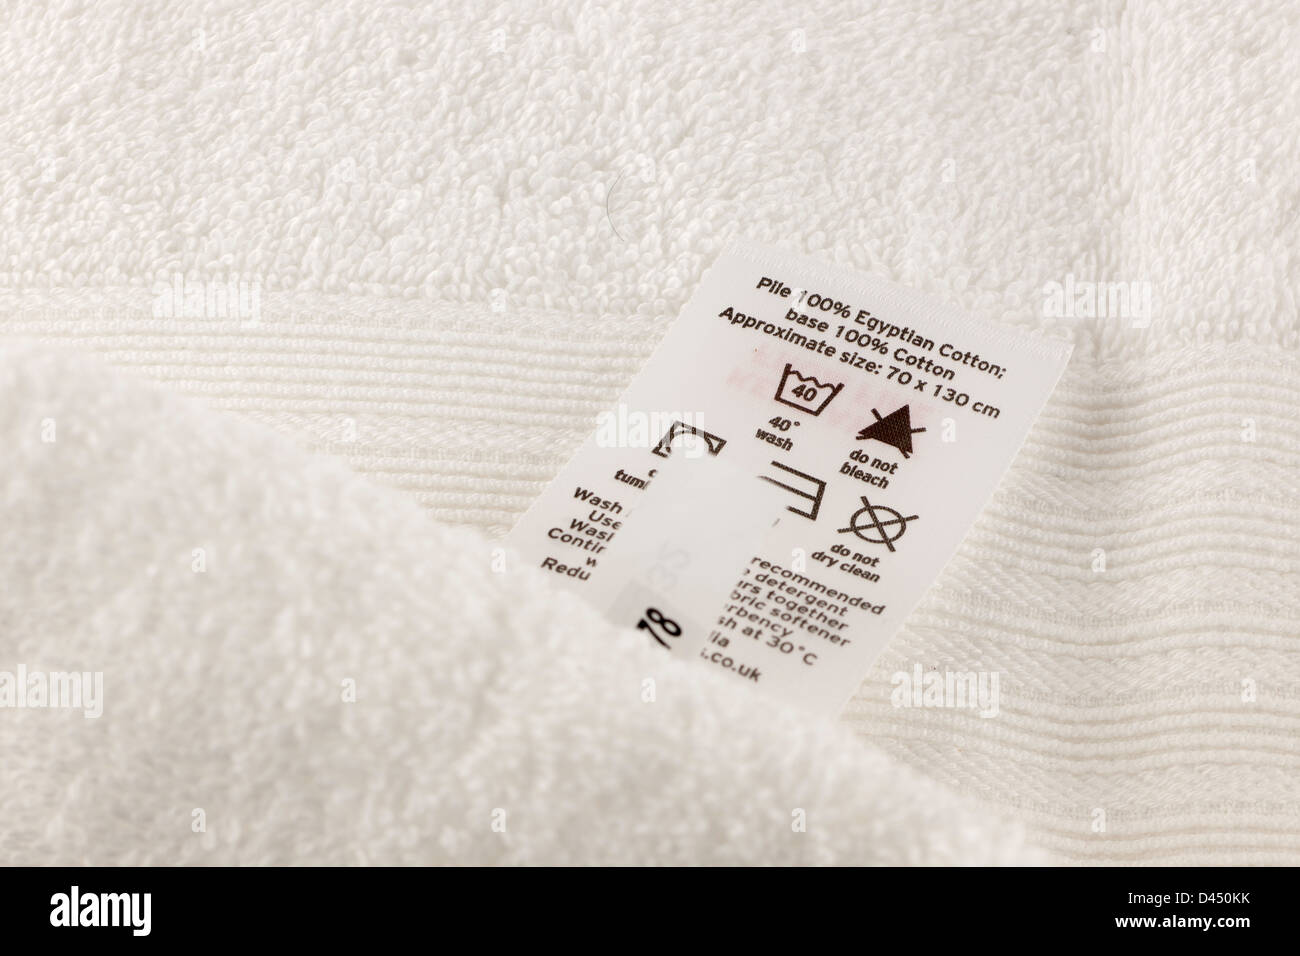 Eine weiße Bad Handtuch Soft-Touch 100 % ägyptischer Baumwolle mit waschen  Anweisungen Label hautnah Stockfotografie - Alamy